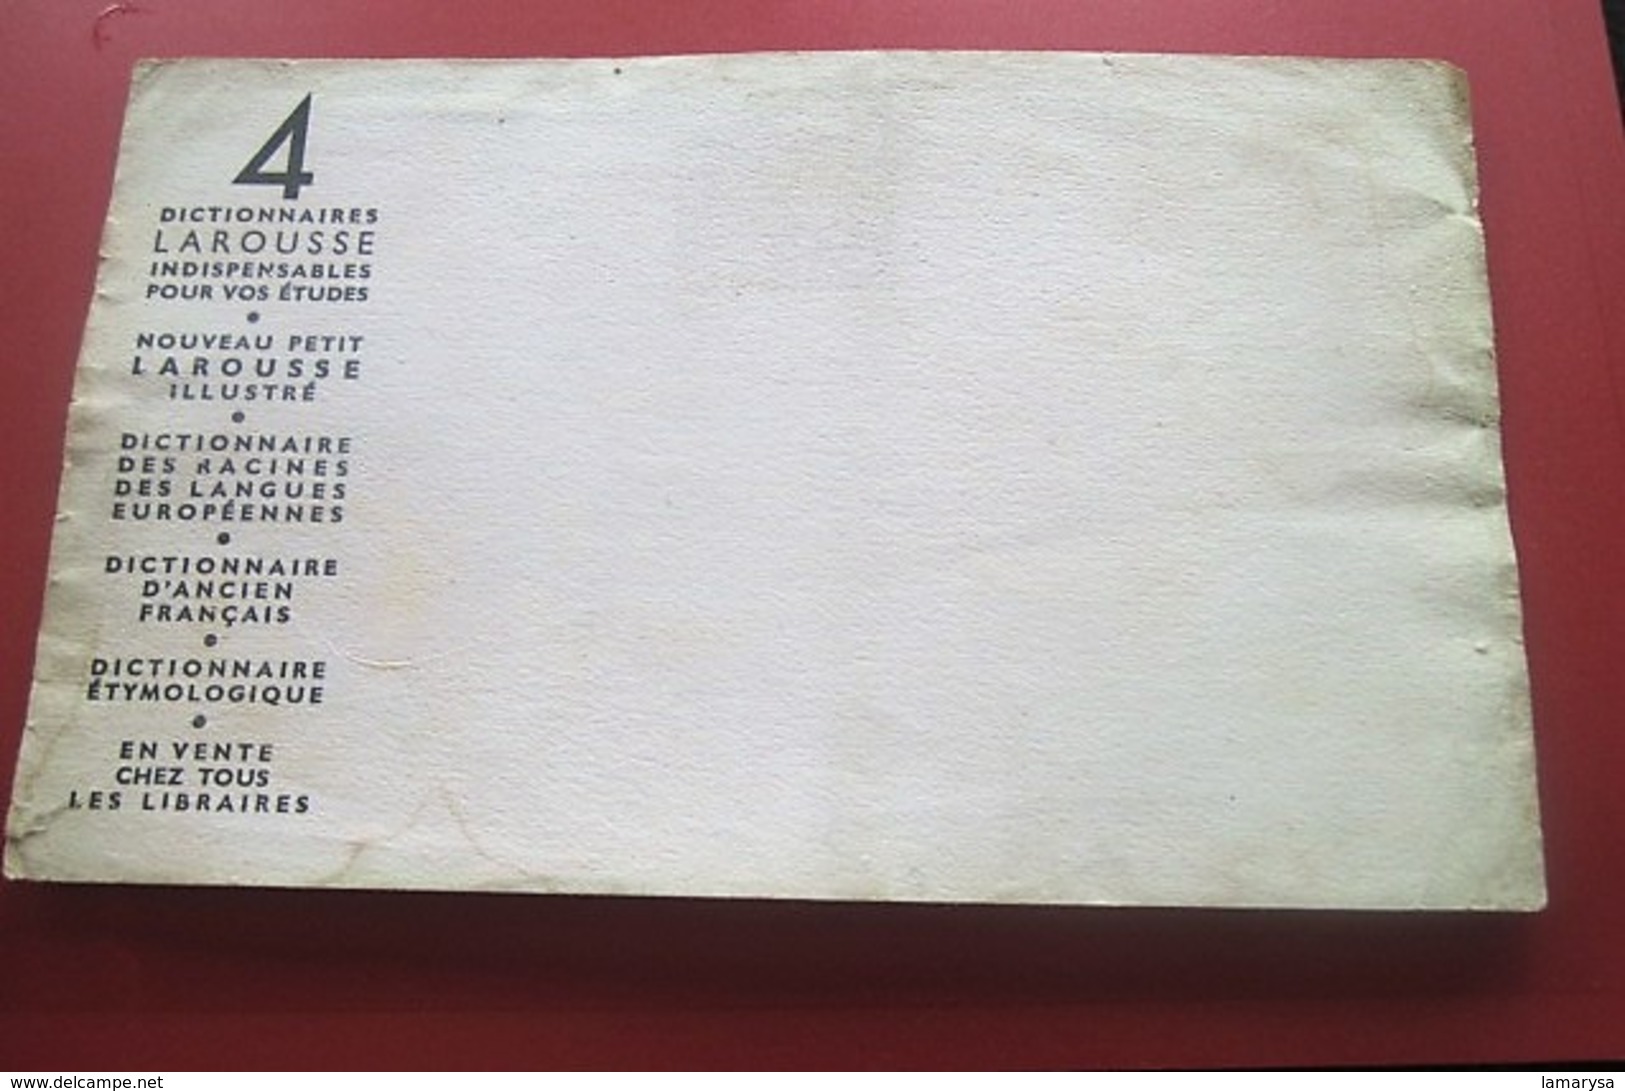 GRAMMAIRE ANGLAISE EDITEE PAR LAROUSSE - BUVARD Collection Illustré Publicitaire Publicité LIBRAIRIE PAPETERIE - Papeterie